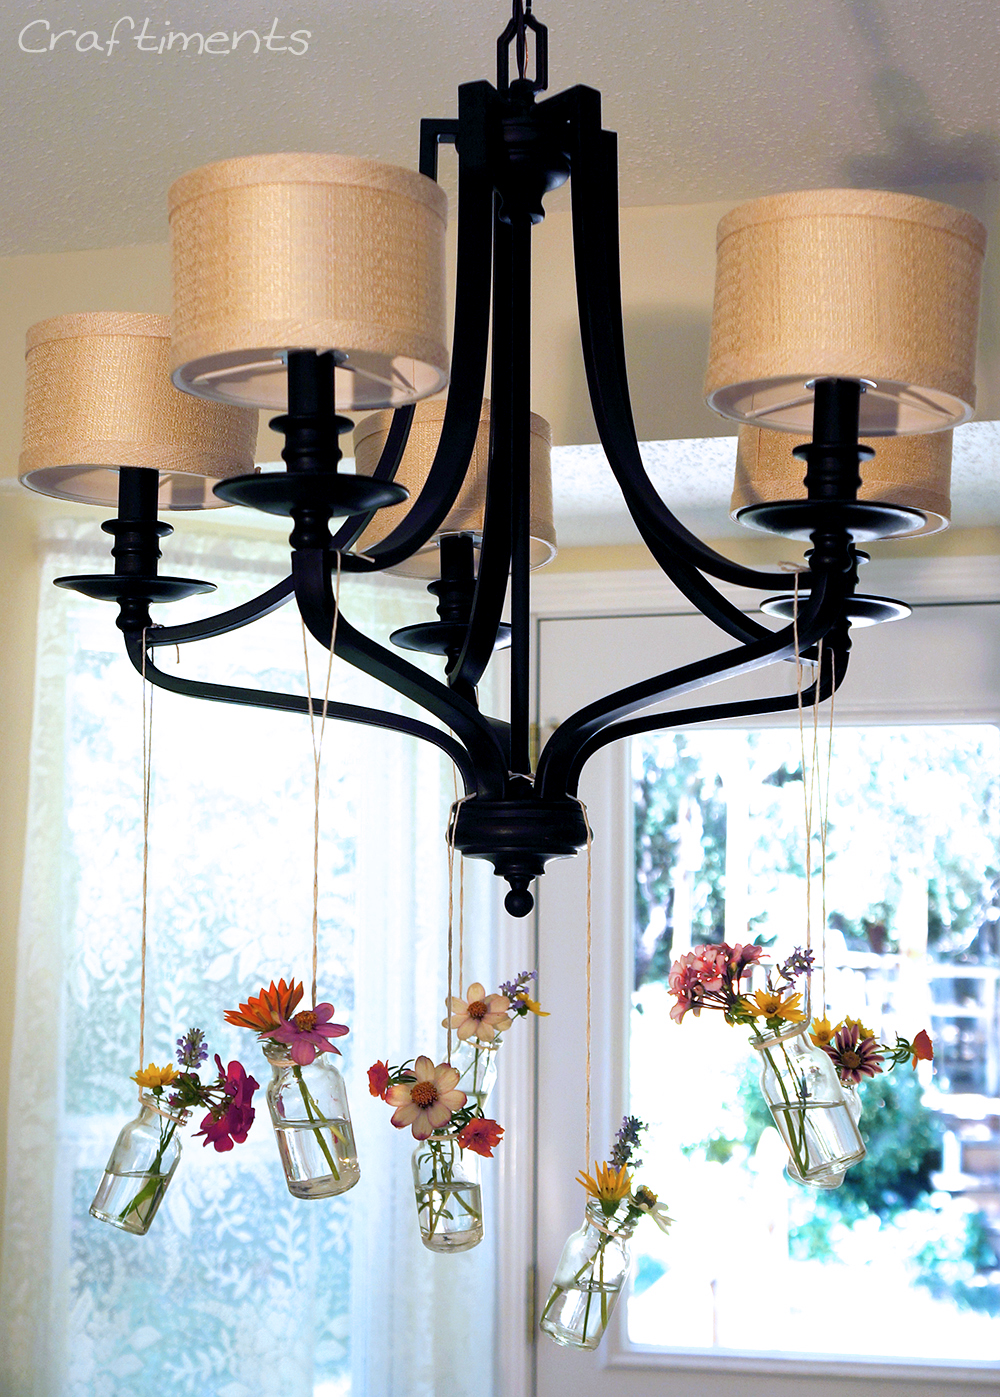 Craftiments: DIY hanging chandelier bud vases